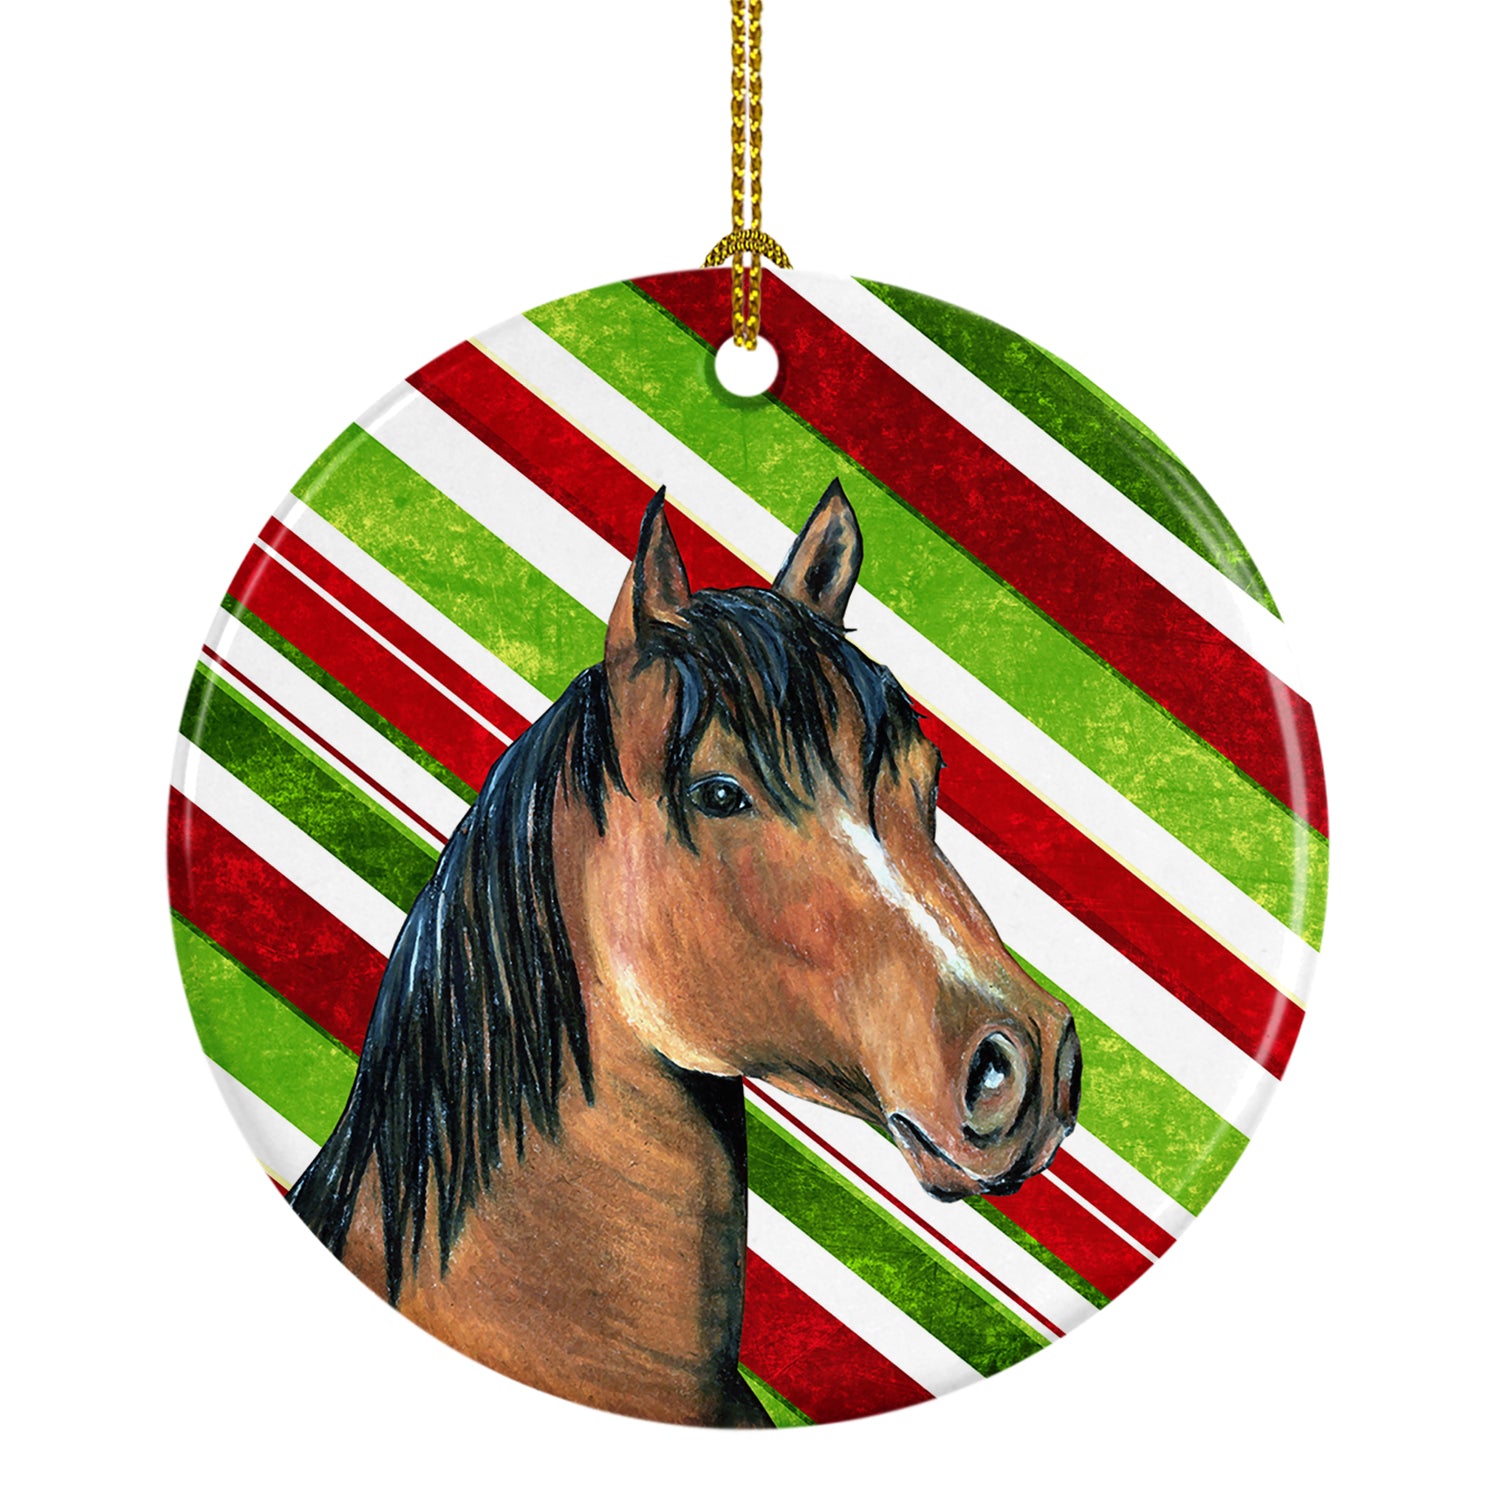 Horse Candy Cane Holiday Christmas Ceramic Ornament SB3135CO1 - the-store.com